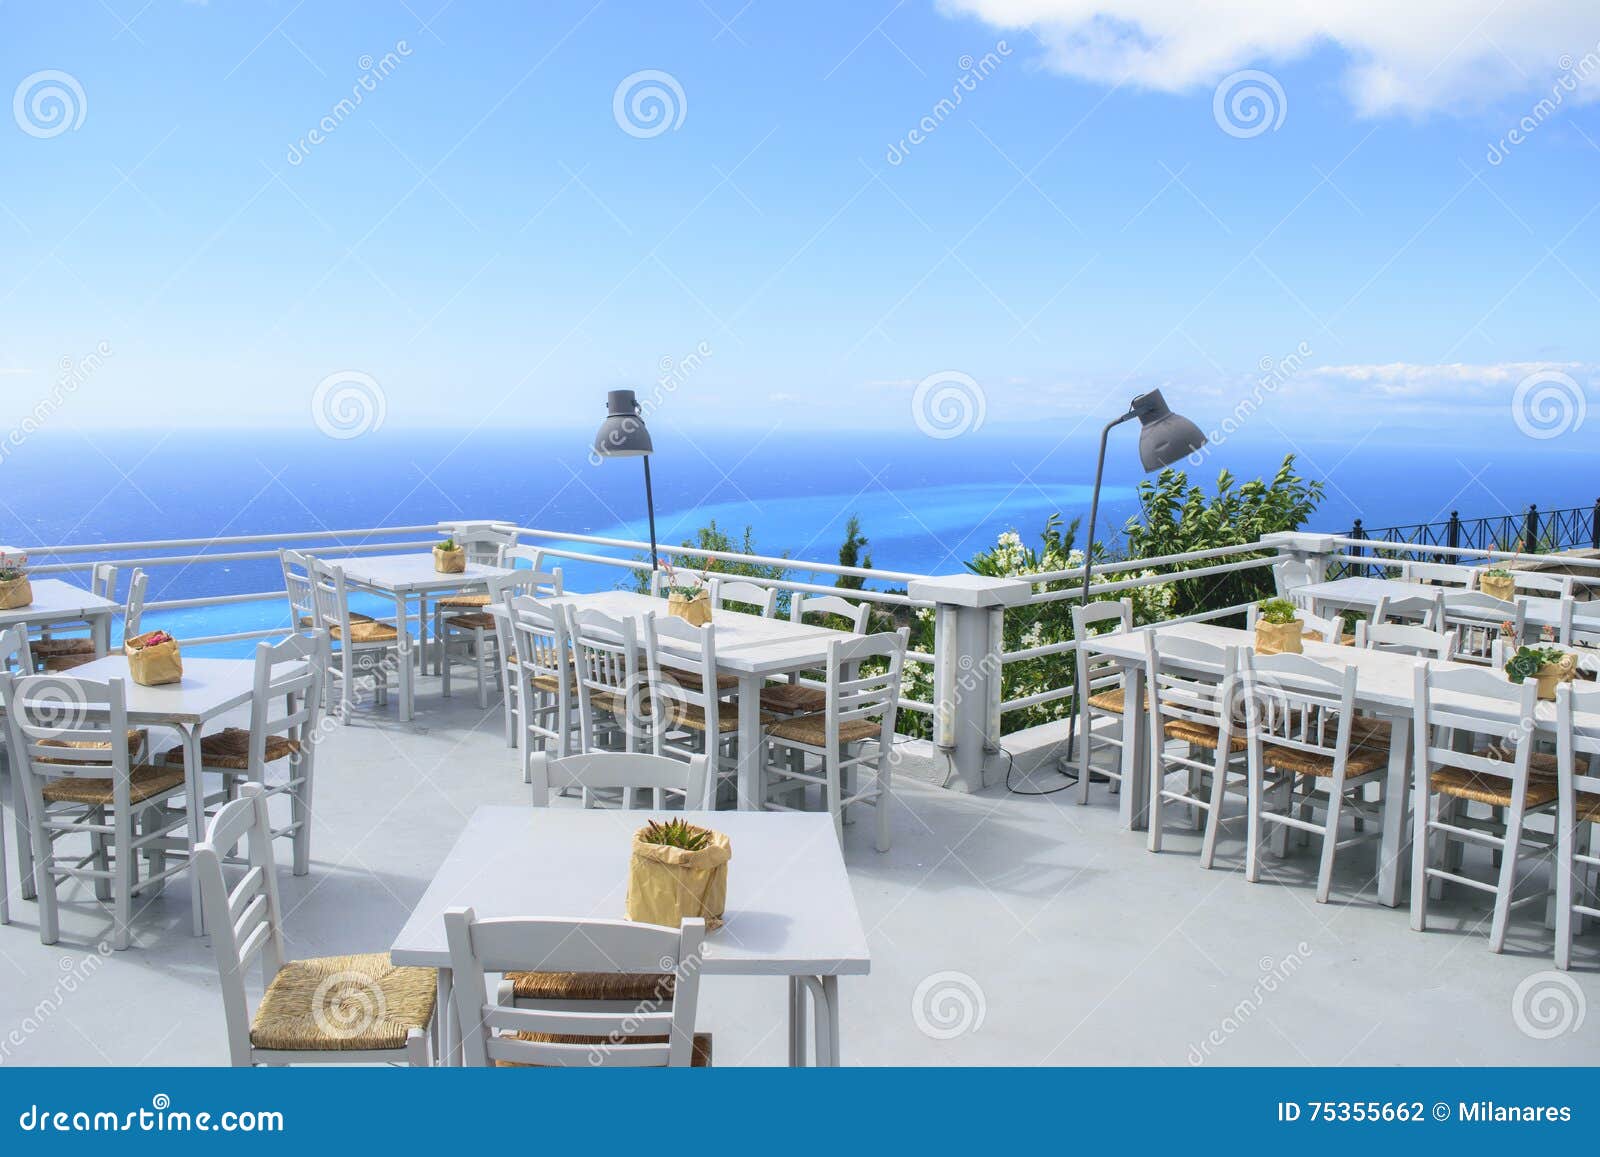 luxury terrace balcony of exclusive seaside resort with fancy ta